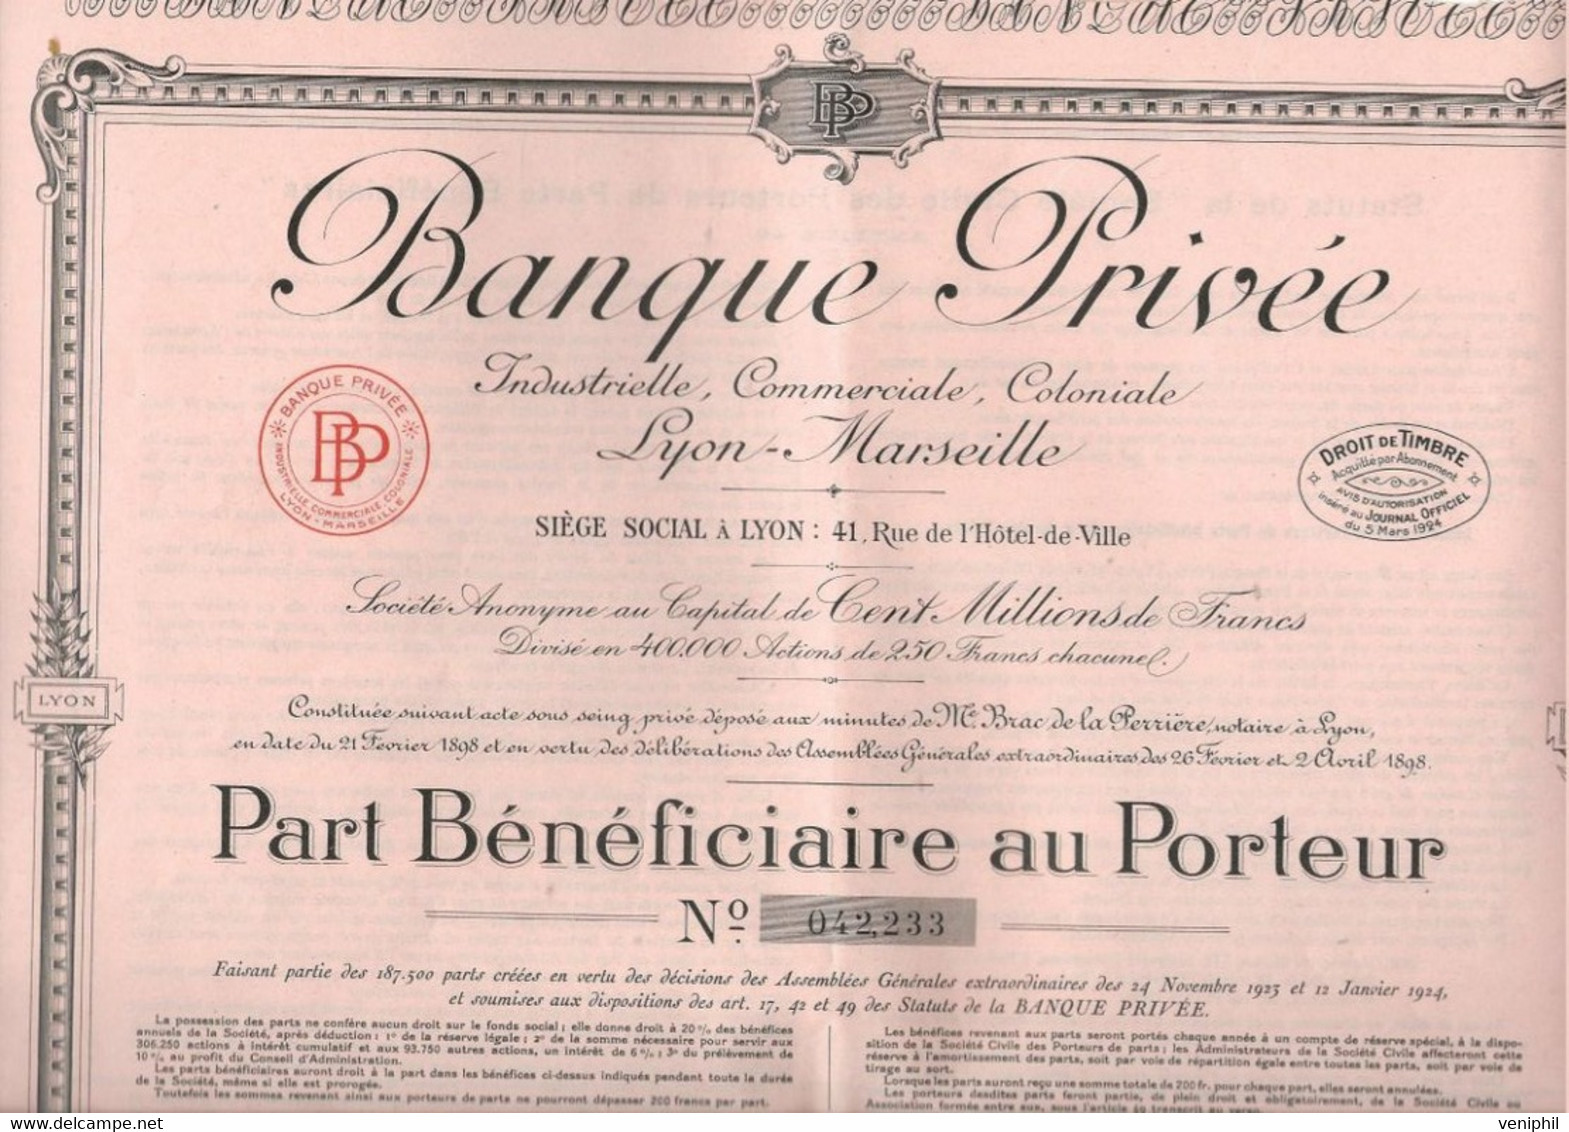 BANQUE PRIVEE INDUSTRIELLE, COMMERCIALE,COLONIALE -LYON -MARSEILLE- PART BENEFICIAIRE  ANNEE 1924 - Banque & Assurance